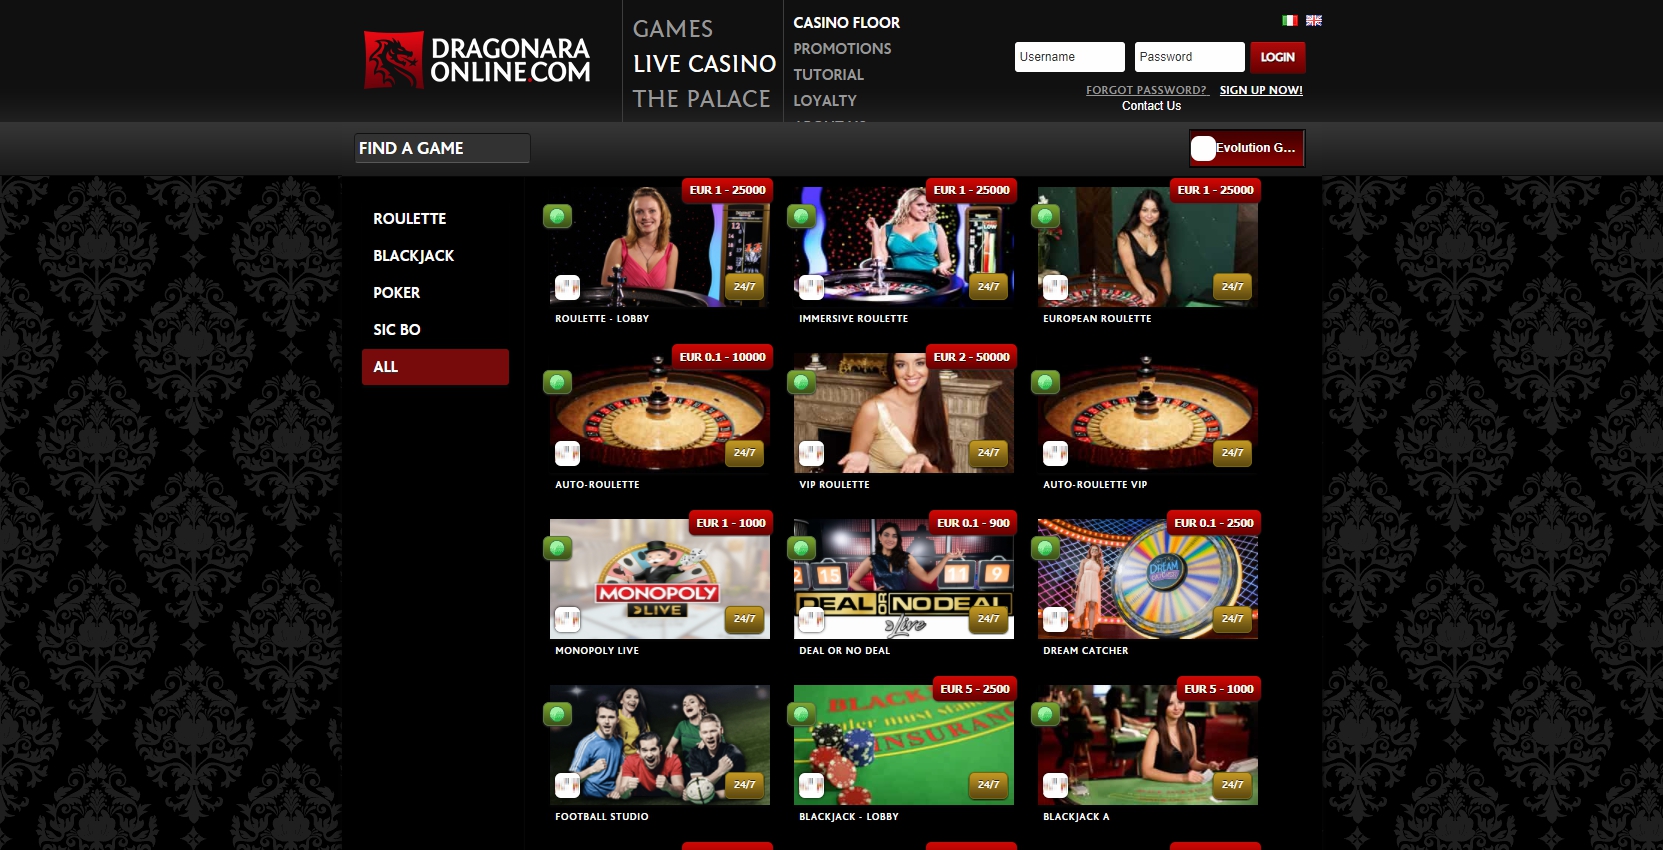 Dragonara Casino Live Dealer Games